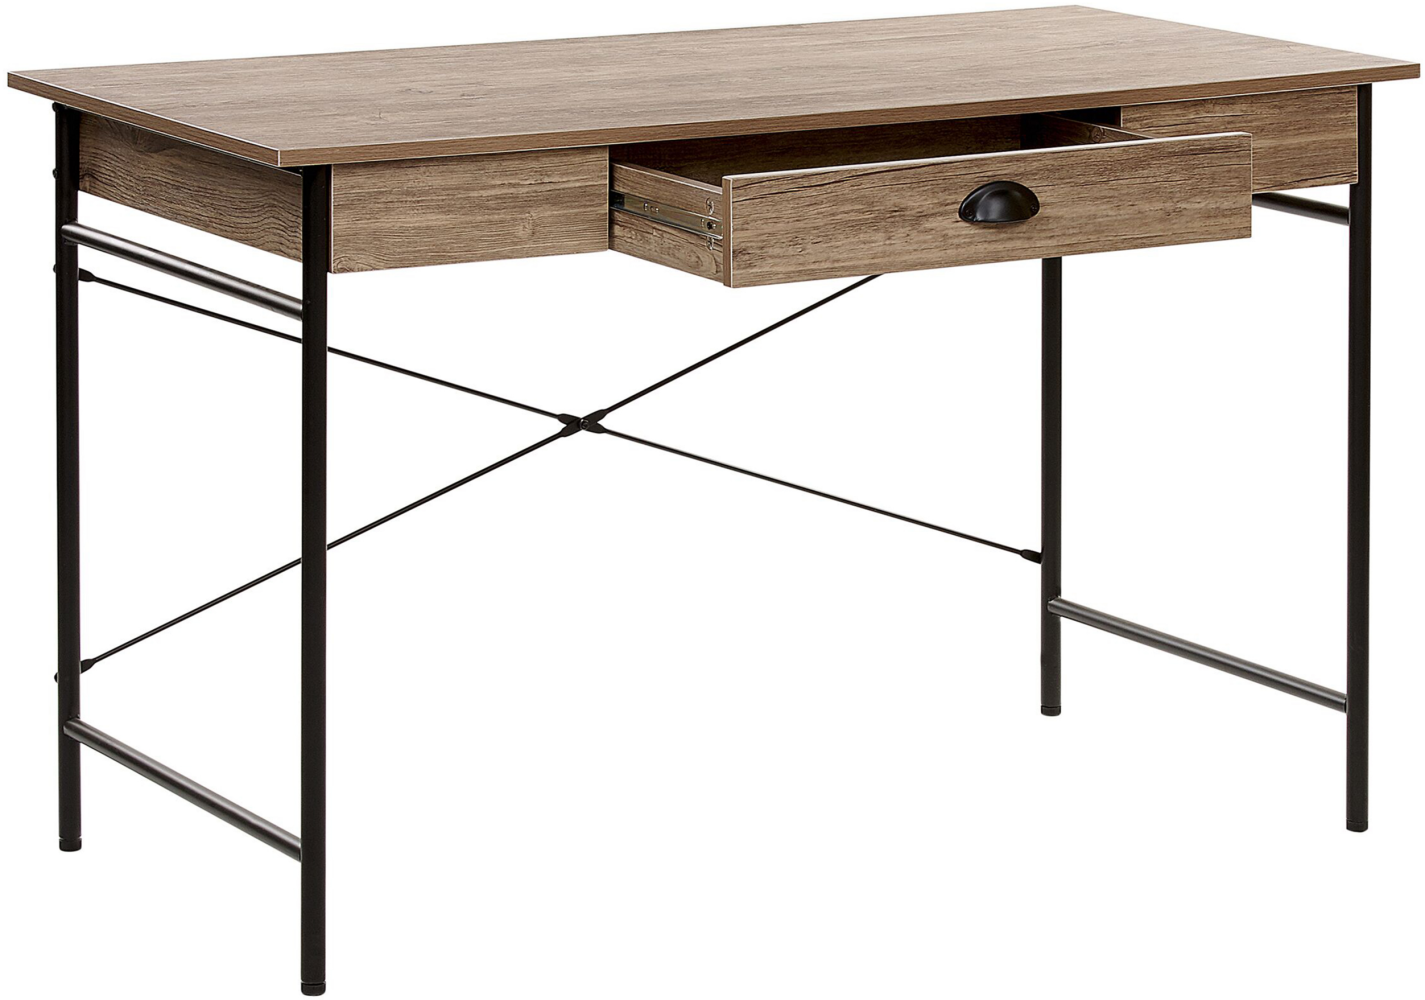 Schreibtisch dunkler Holzfarbton Stahlgestell mit Schublade 120x60 cm industrie Look Jugend- und Arbeitszimmer Bild 1